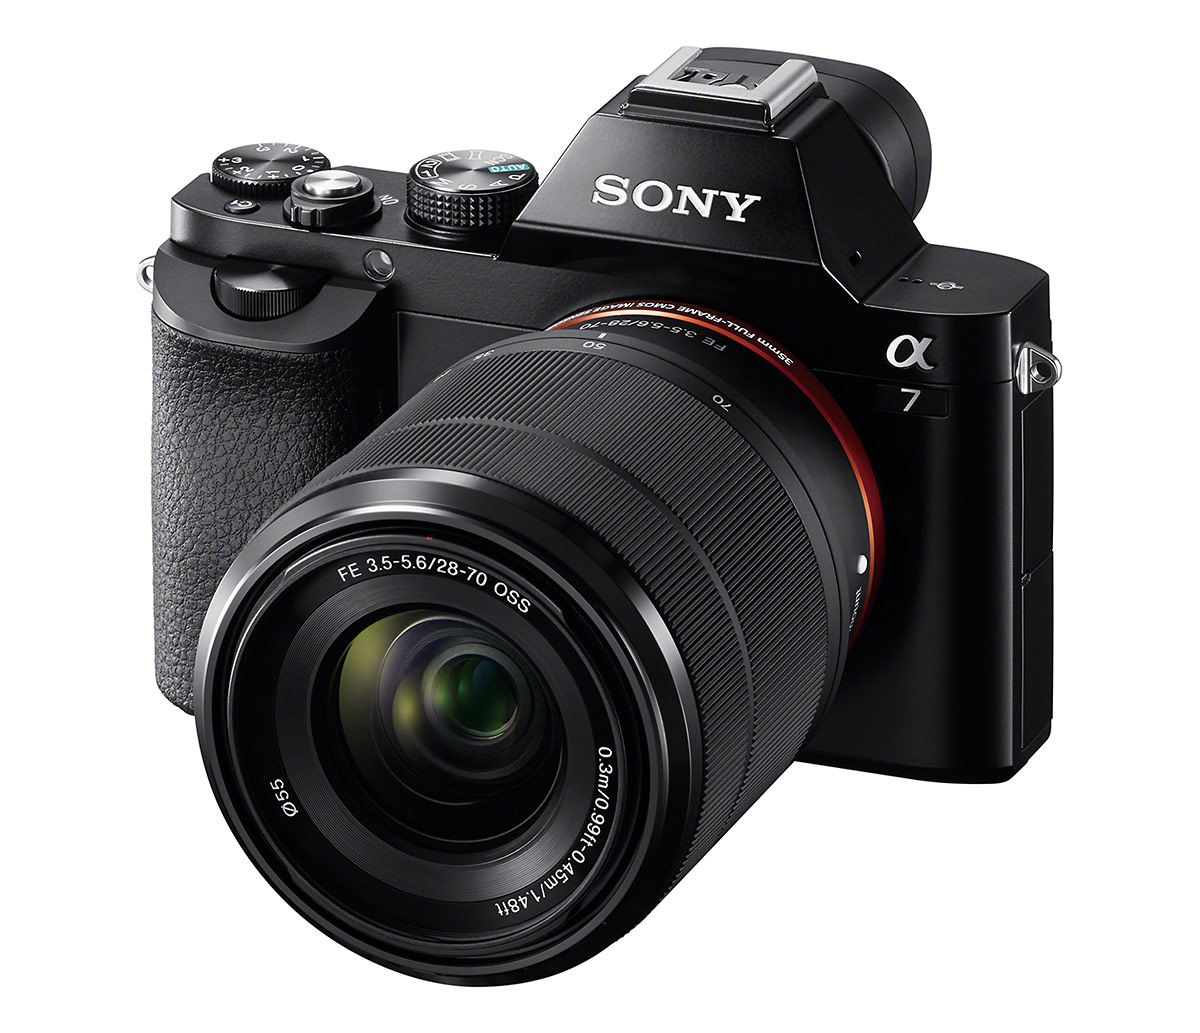 Sony Alpha A7 With New FE 28-70mm f/3.5-5.6 OSS Full-Frame Kit Lens